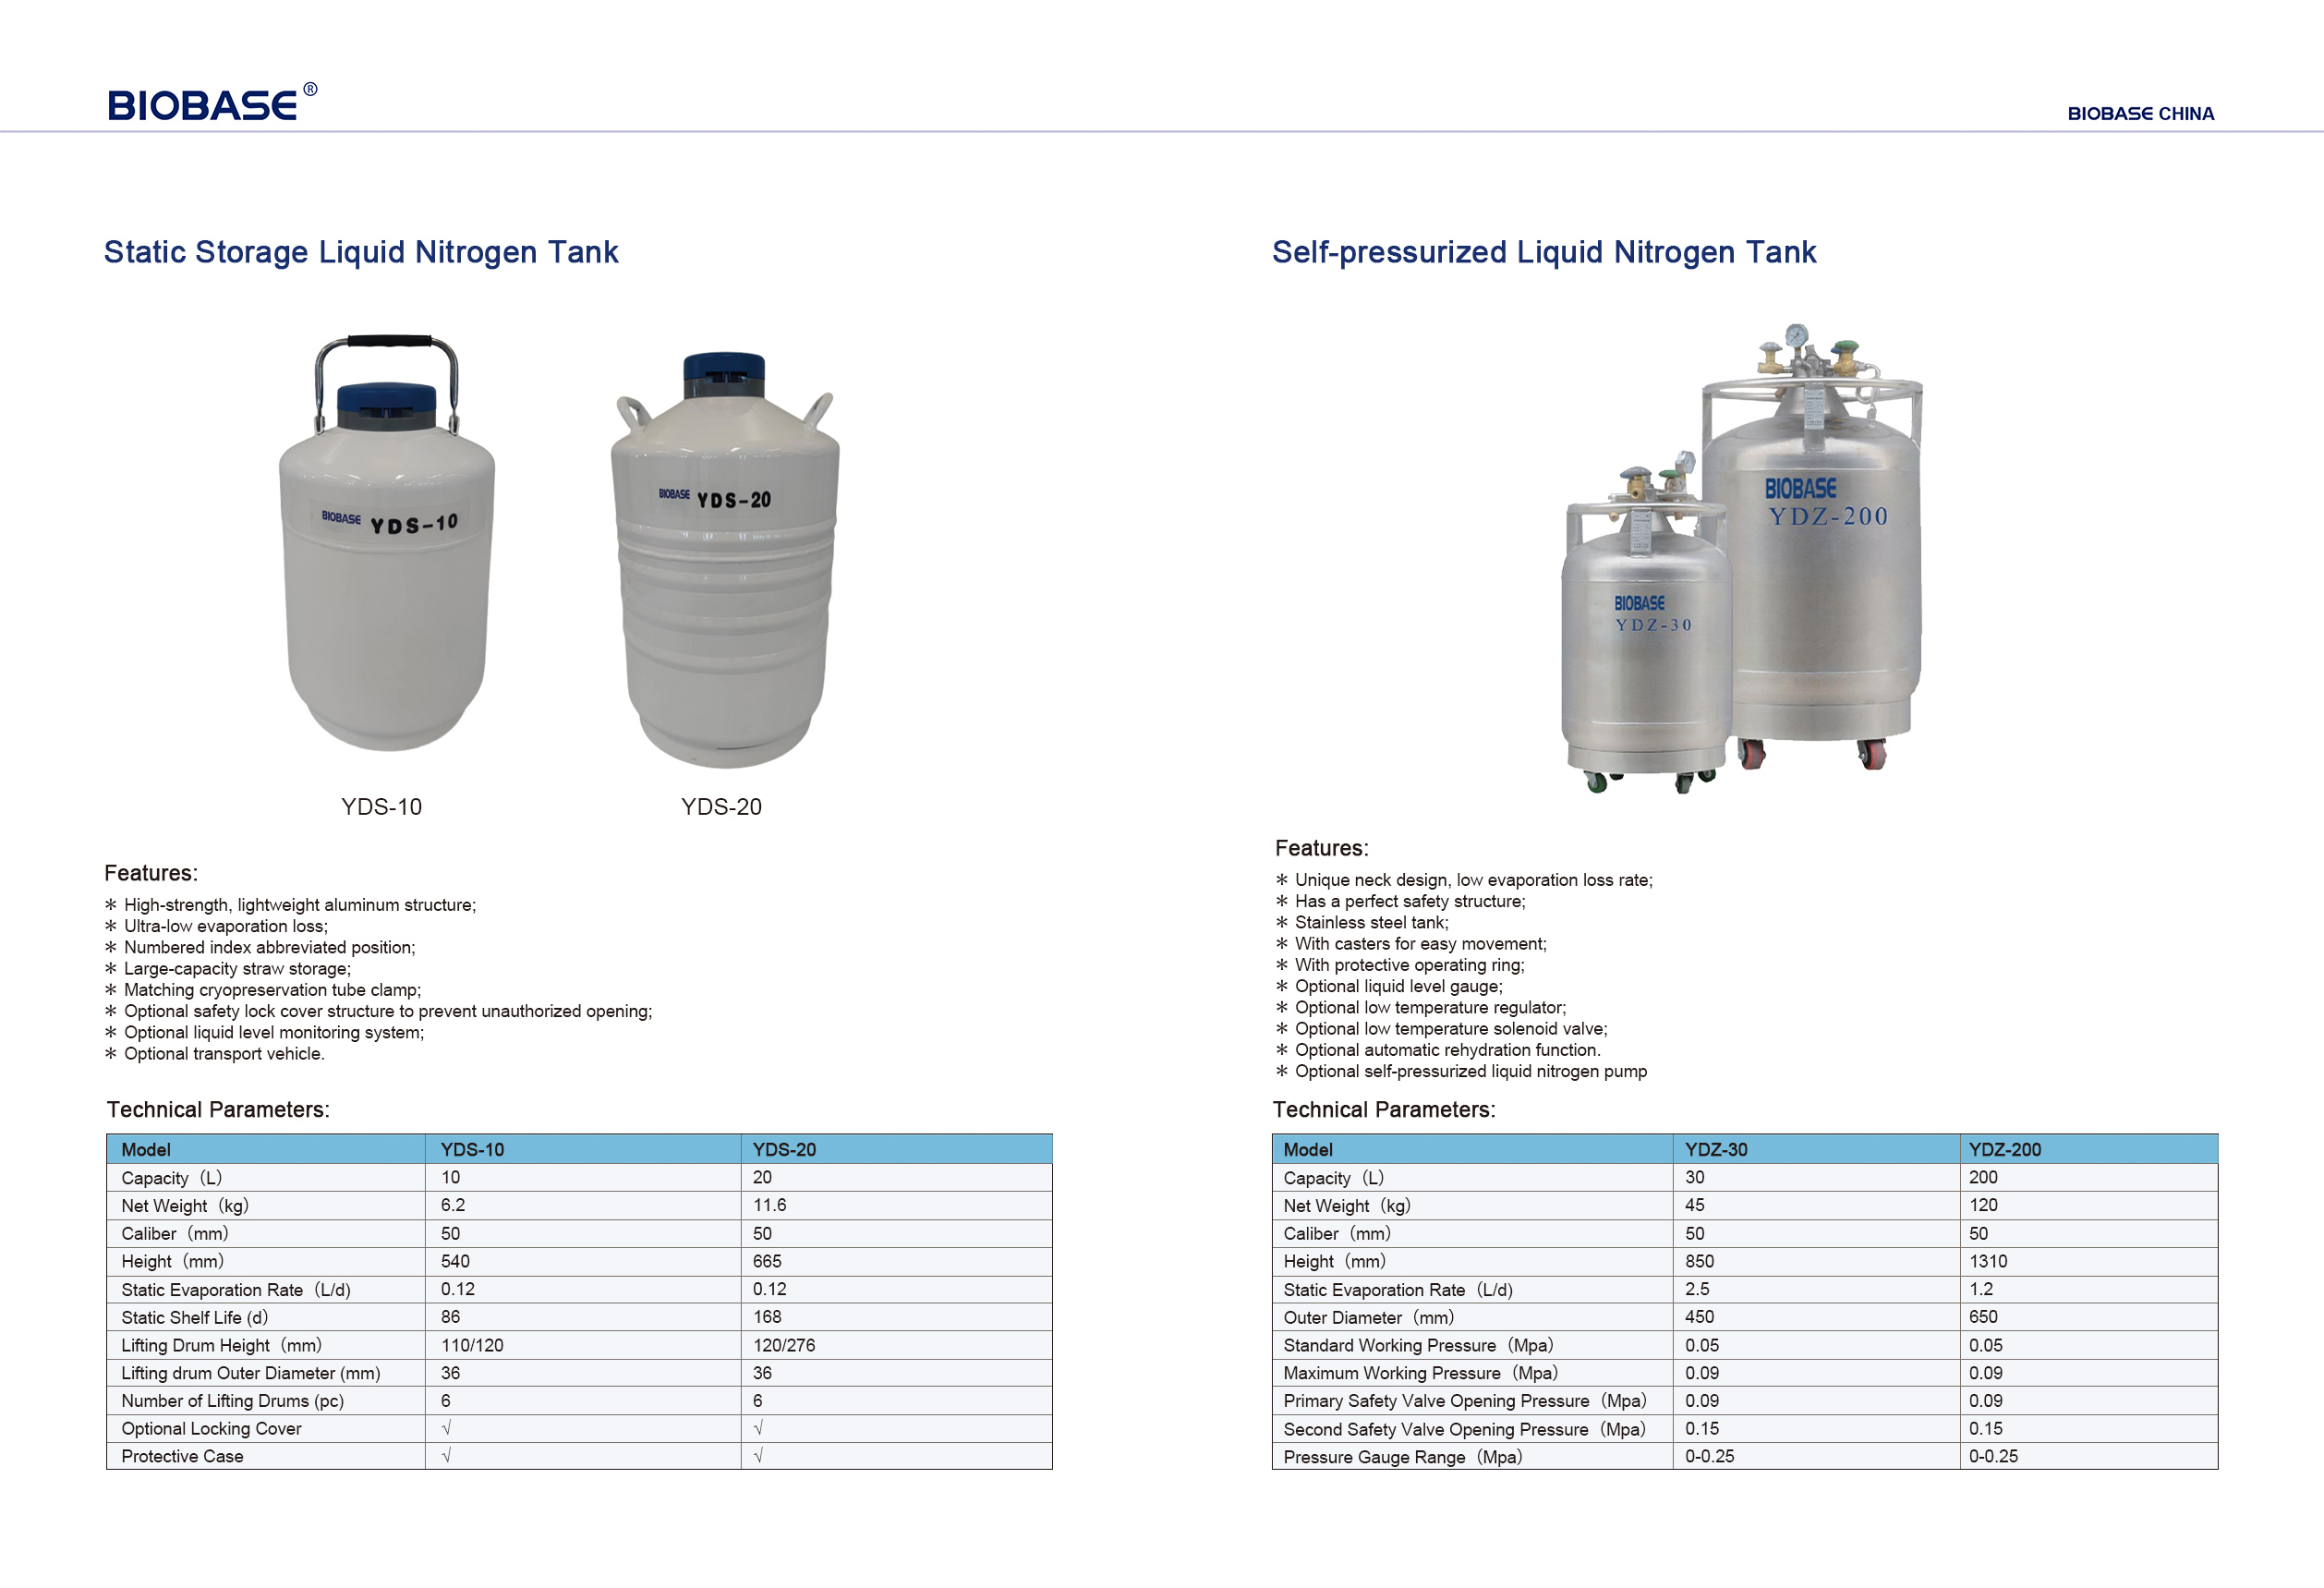 Static Storage Liquid Nitrogen Tank & Self-pressurized Liquid Nitrogen Tank